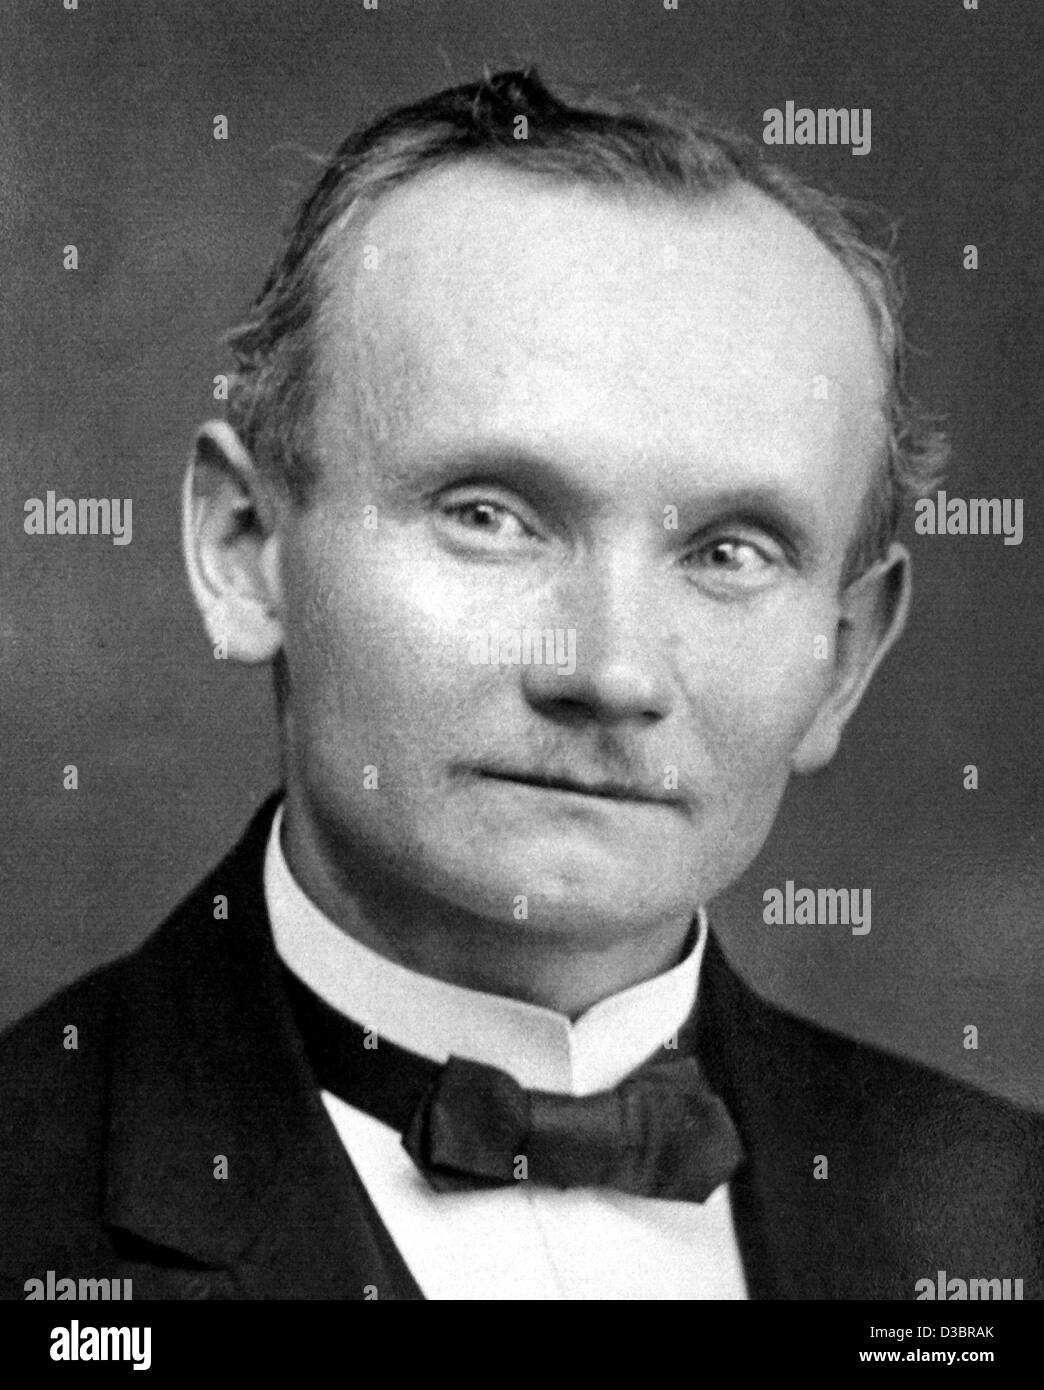 (Dpa-Dateien) - Reinhold Burger (1866-1954), der Erfinder der Thermoskanne, in ein Bild von Firmenkomplex, Deutschland, um 1900. Der Erfinder des nützlichen Fläschchen stammt aus der Stadt Firmenkomplex. Burger im Jahr 1894 gründete die Firma Burger & Co hatte die Idee, die Stabilität der Doppel - überprüfen Stockfoto